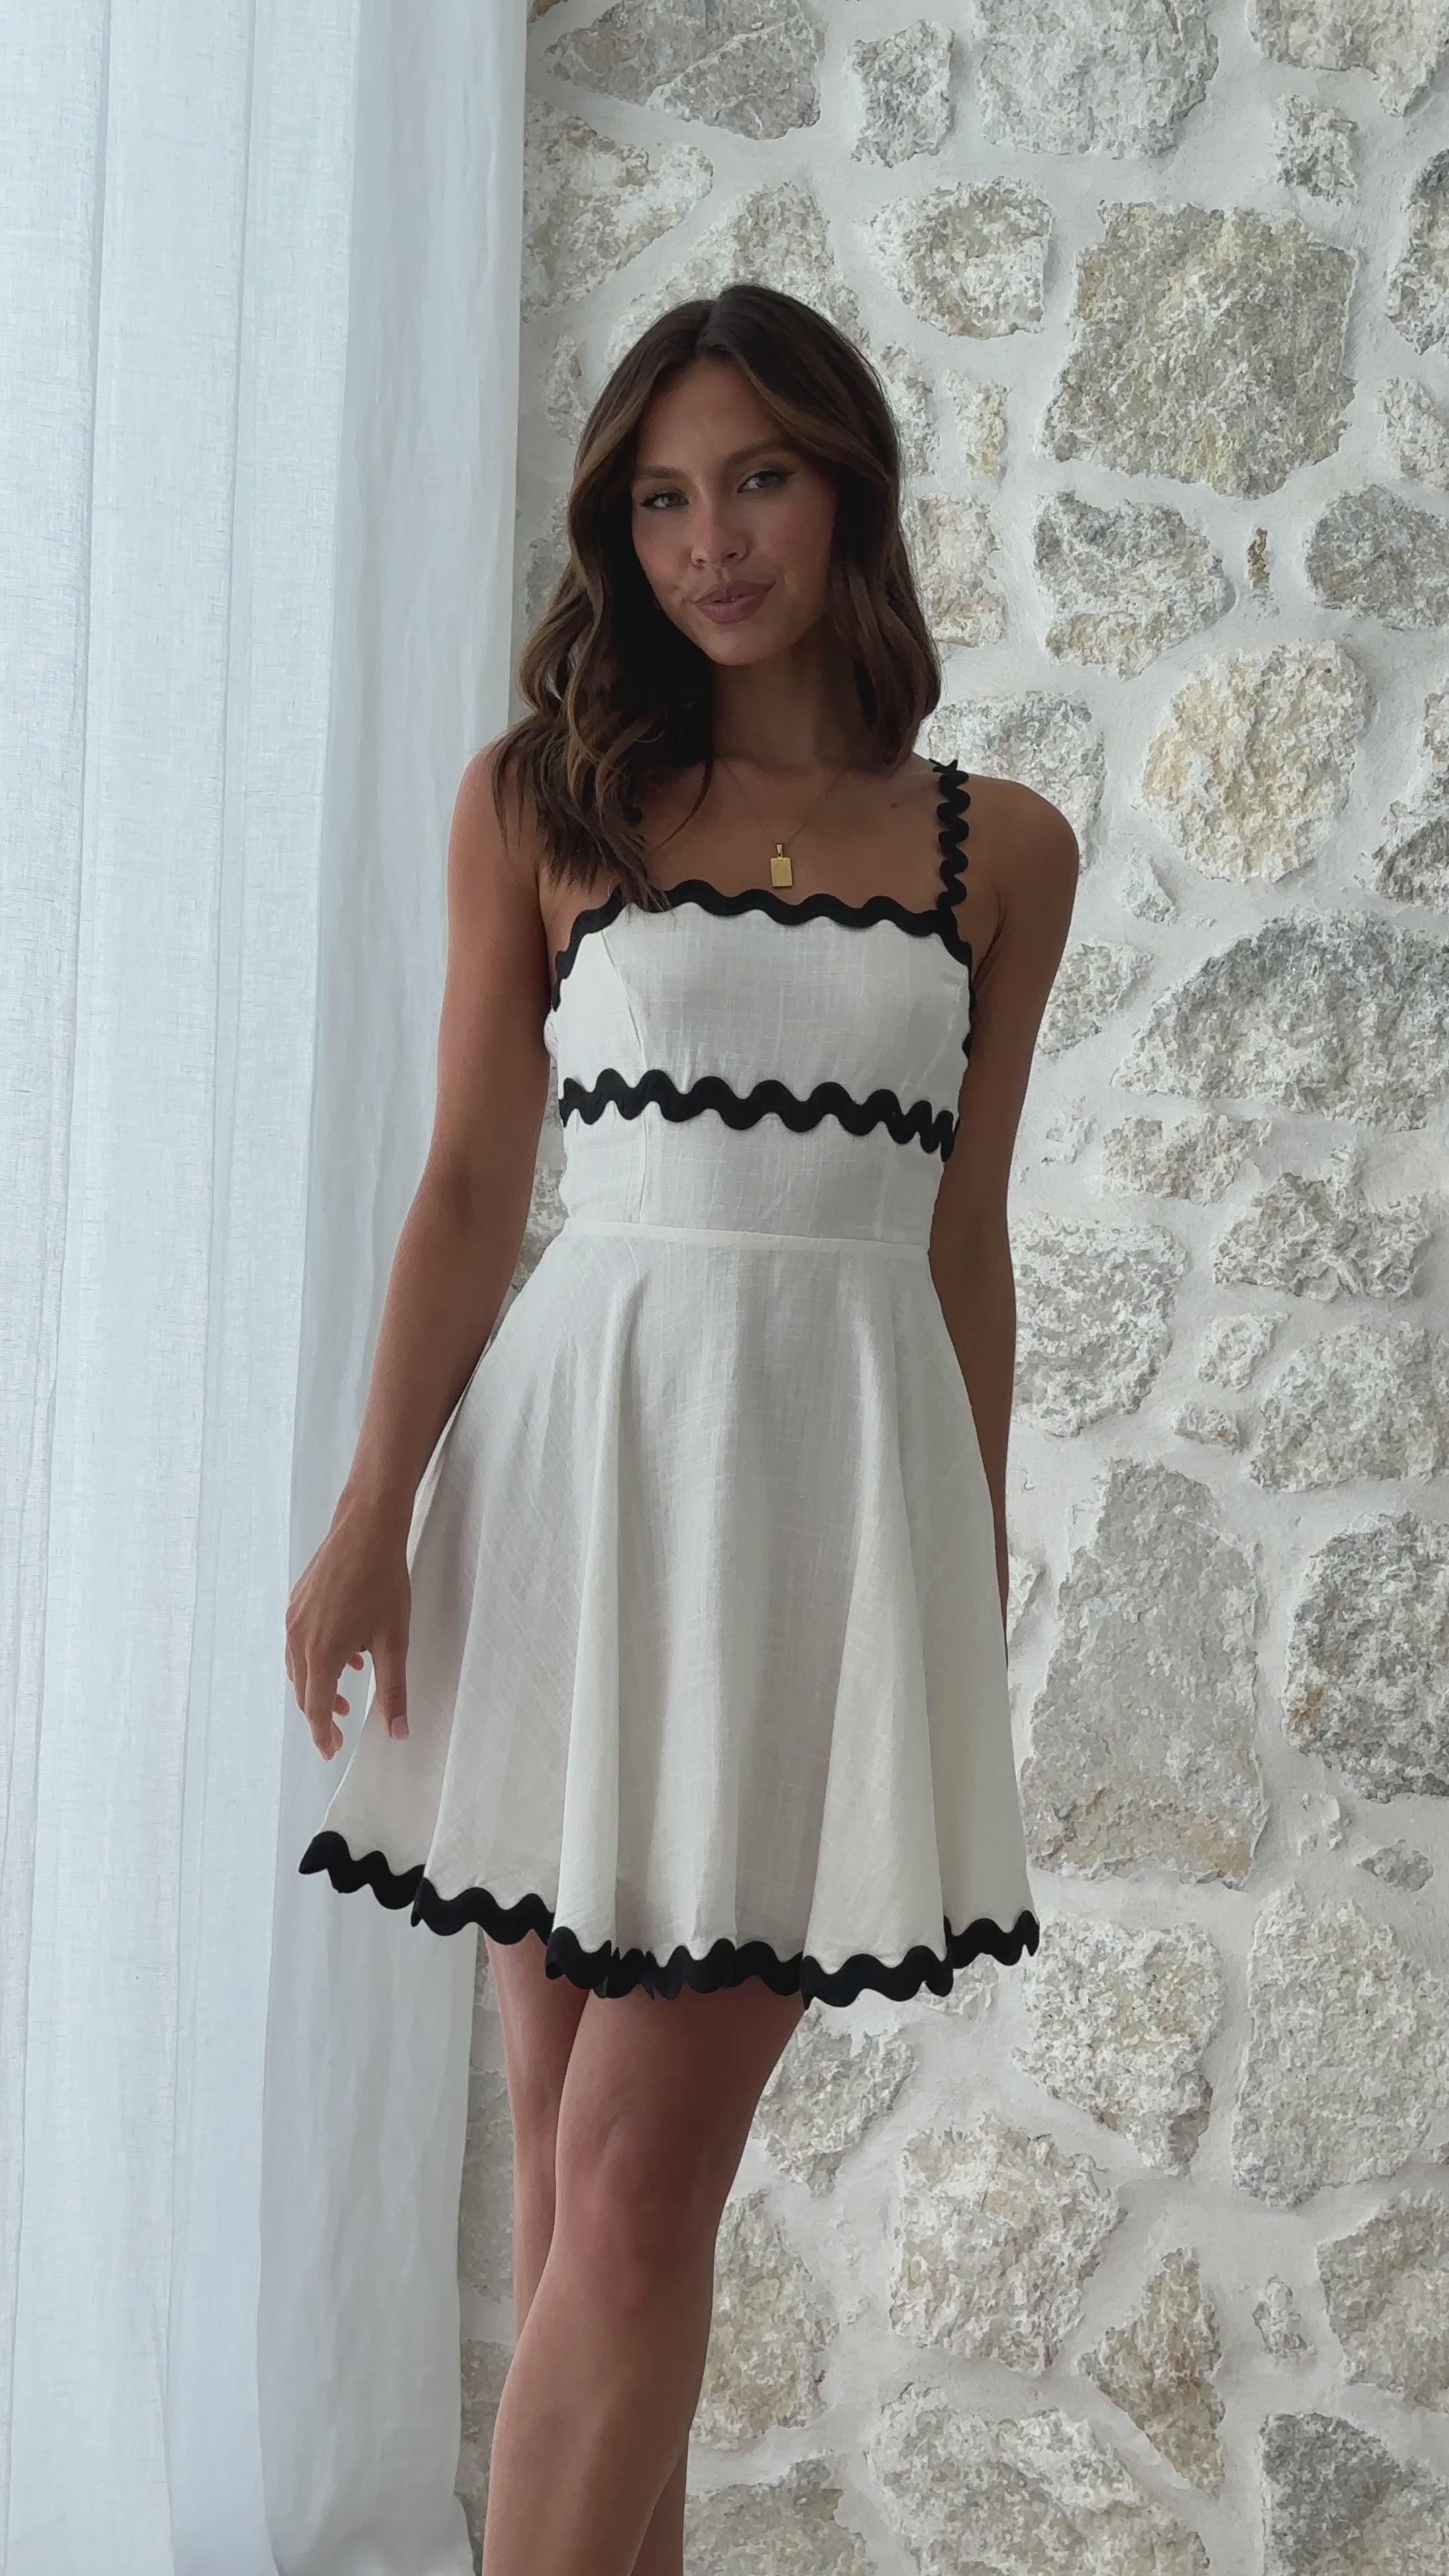 Lys Mini Dress - White/Black